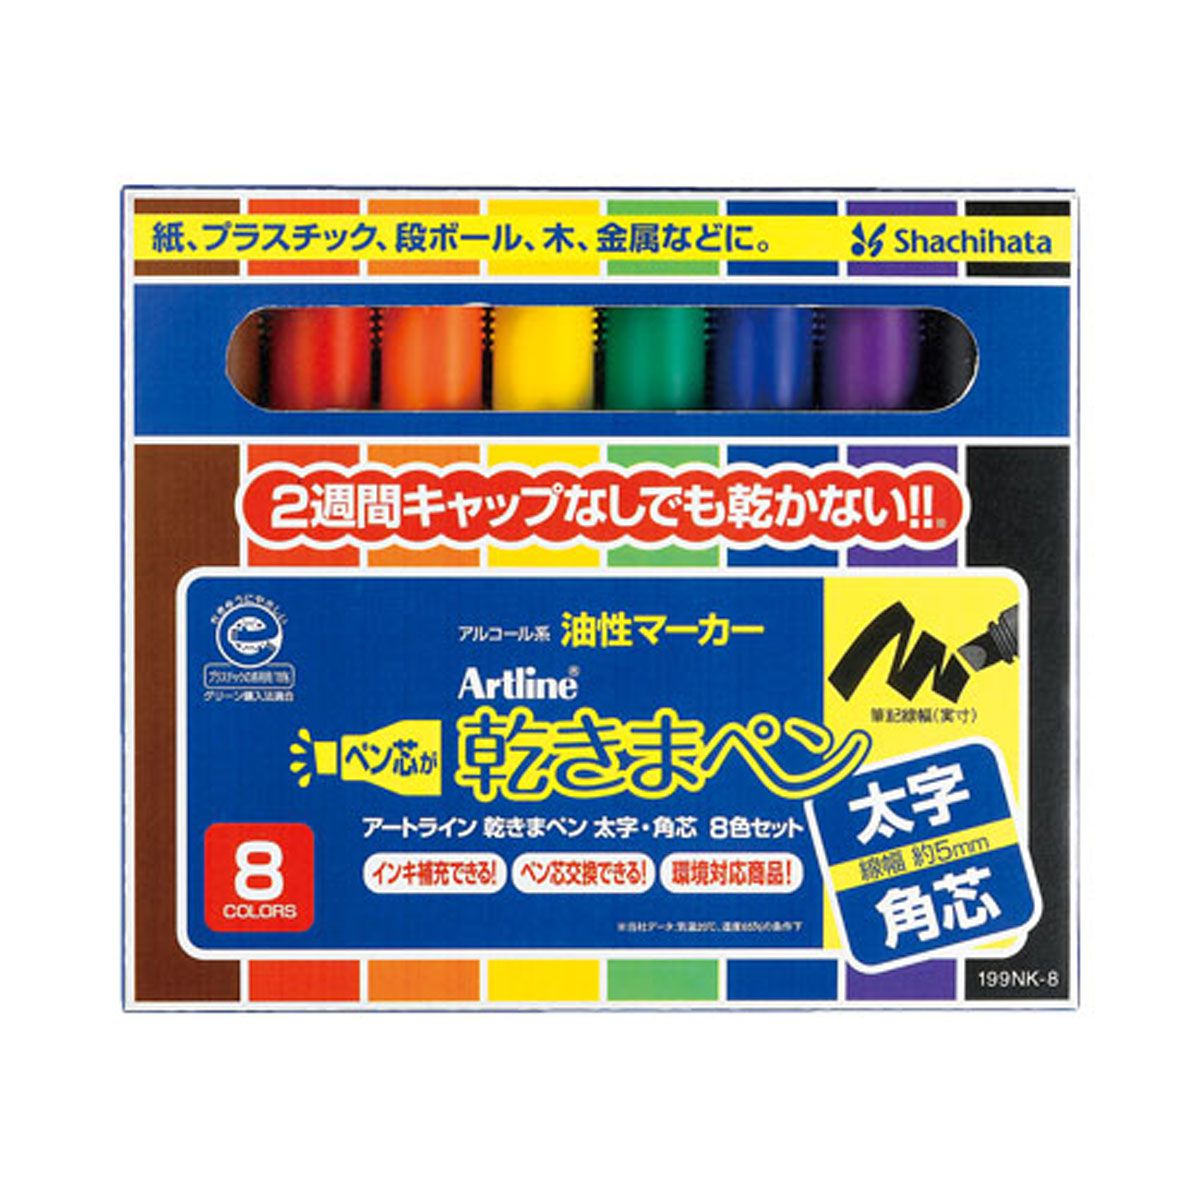 乾きまペン 油性マーカー 太字・角芯 8色セット 紙ケース_1